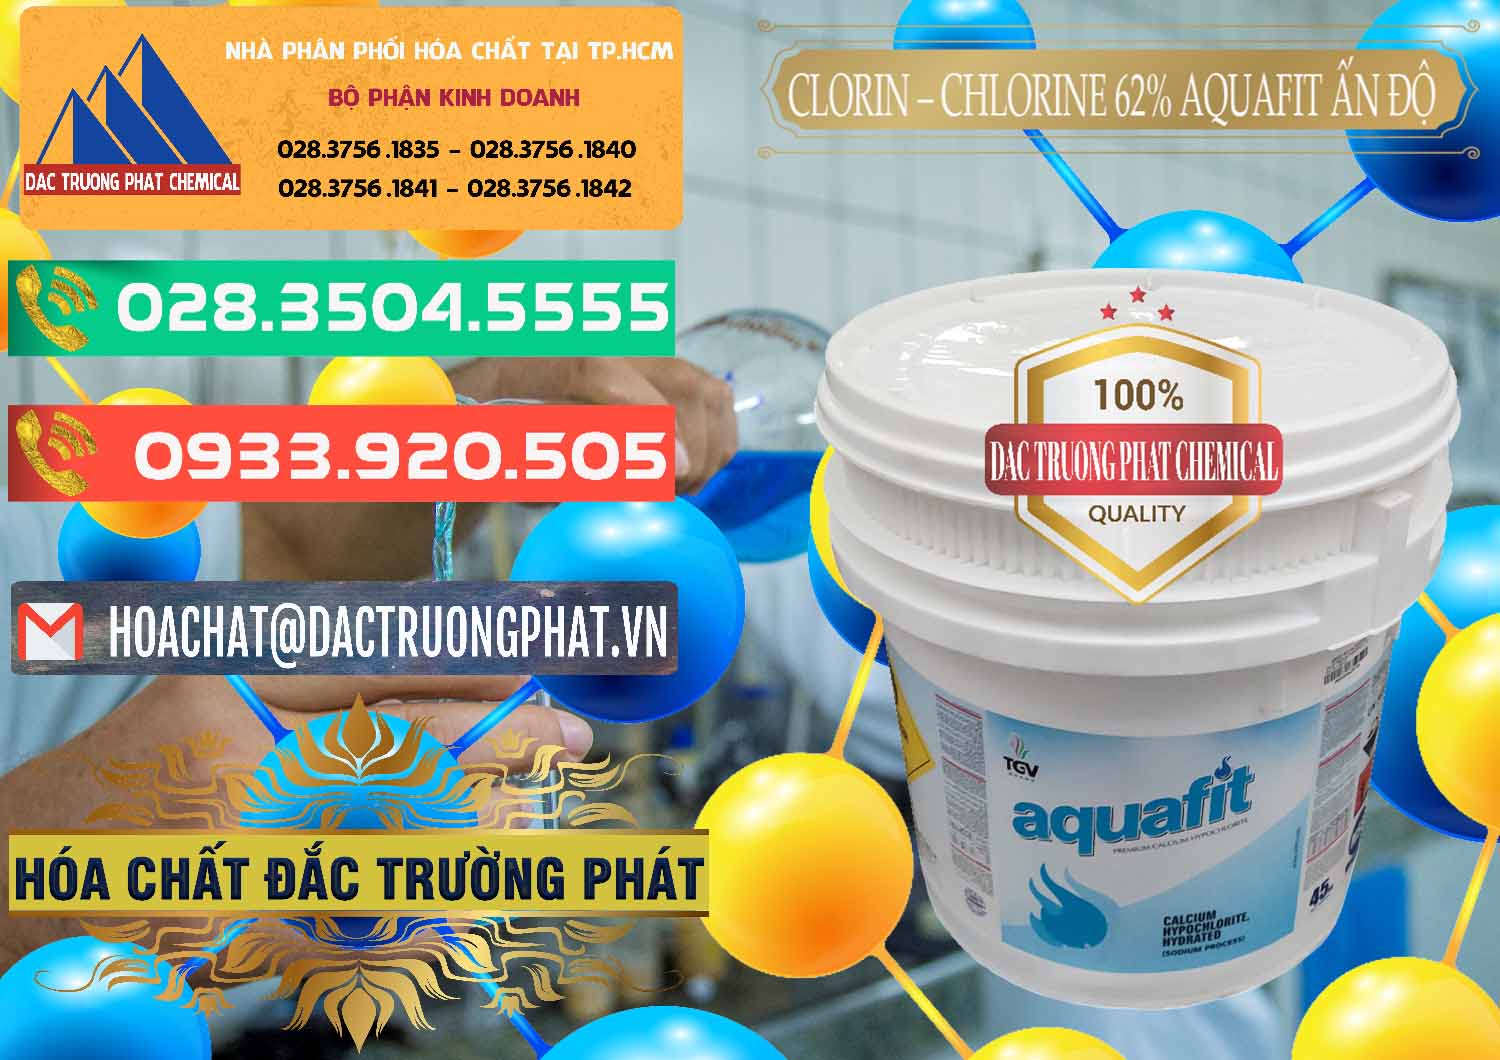 Cty chuyên cung ứng & bán Clorin - Chlorine 62% Aquafit Thùng Lùn Ấn Độ India - 0057 - Cty phân phối & bán hóa chất tại TP.HCM - congtyhoachat.com.vn